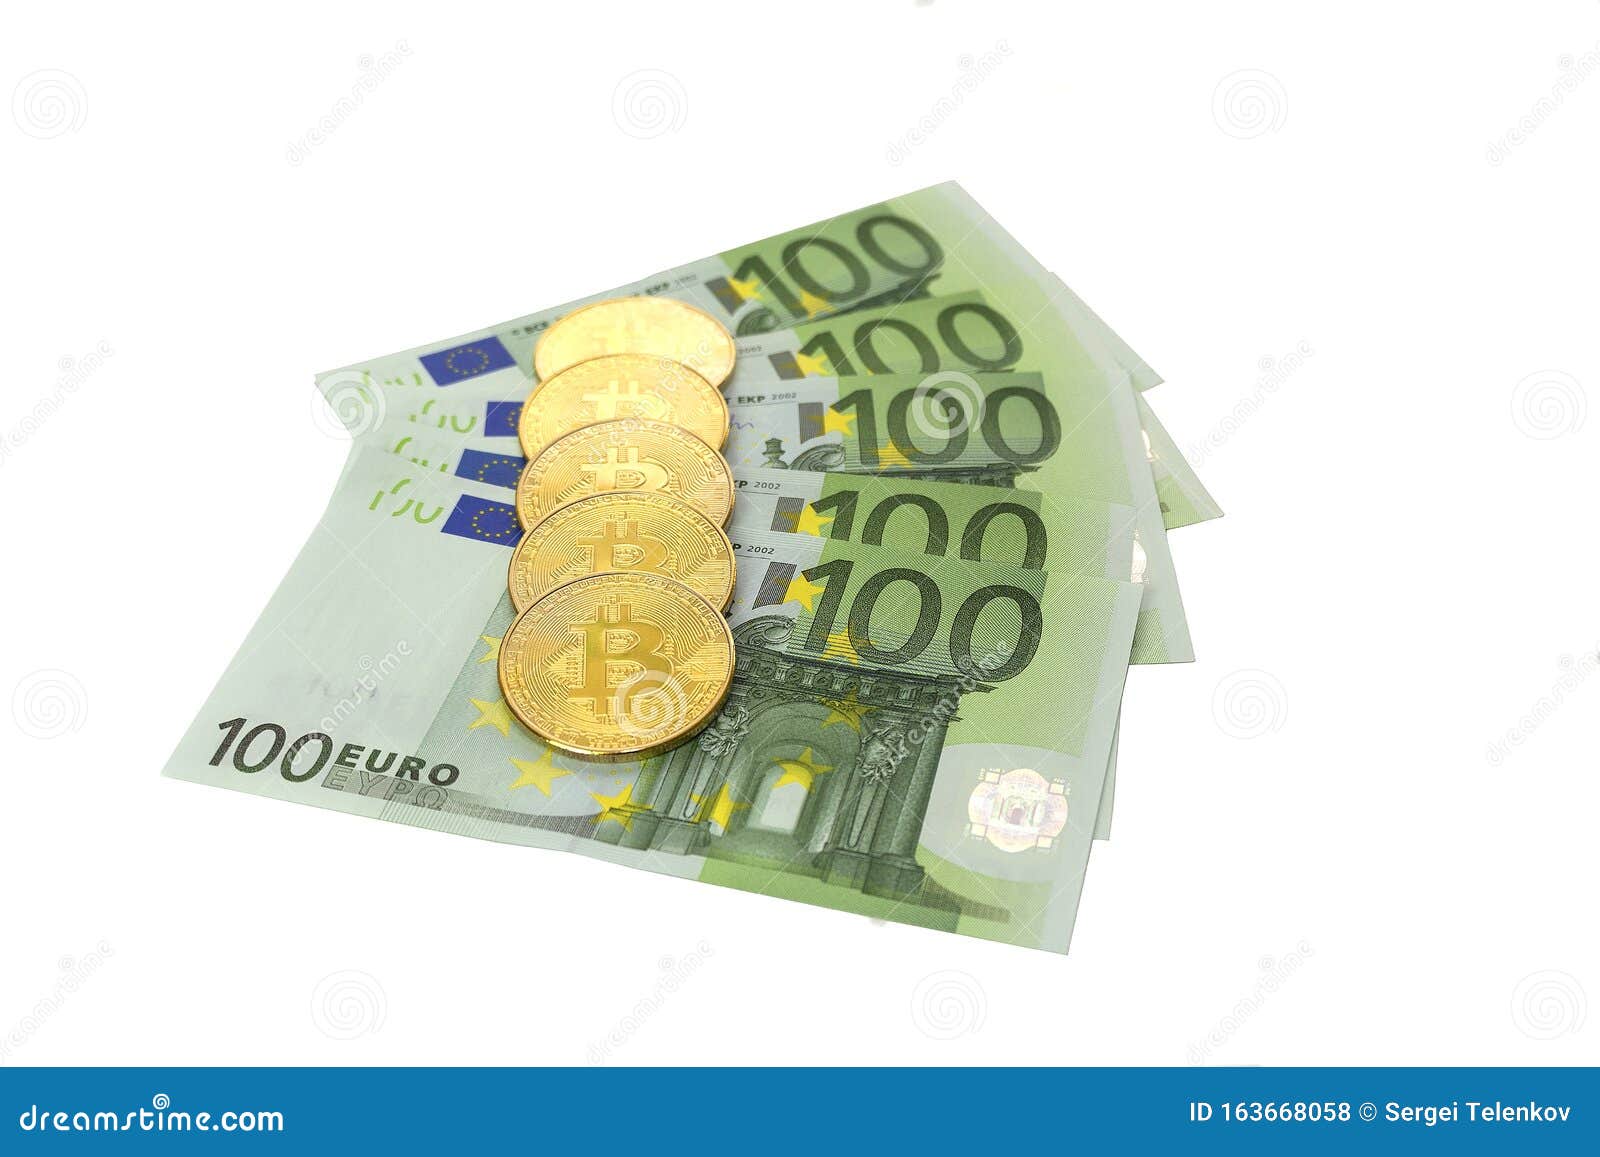 Курс обмена биткоин продажа евро курс обмена биткоин азербайджан